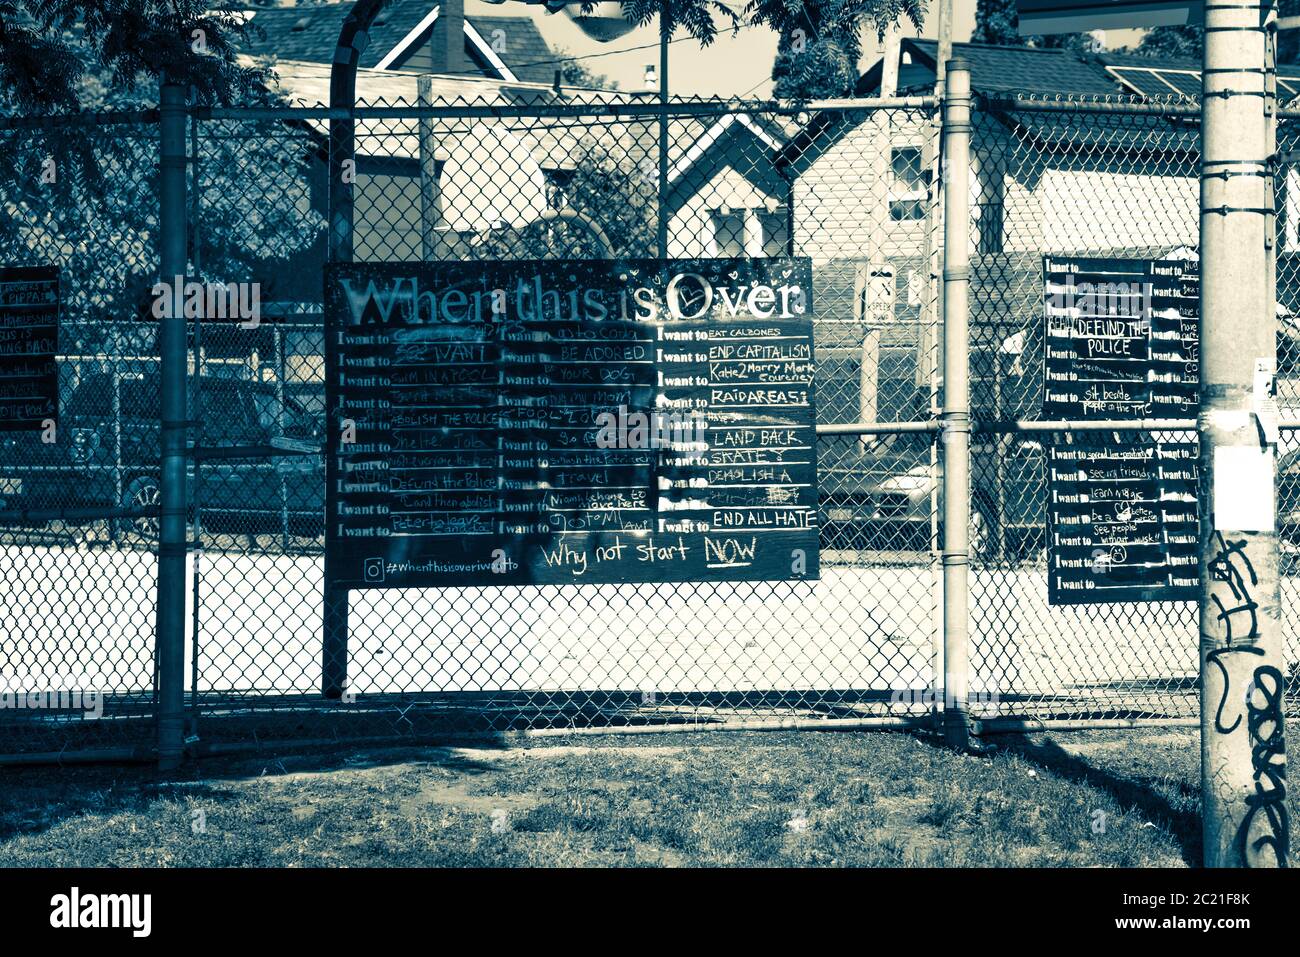 Wenn das vorbei ist - ein schwarz-weißes Foto einer städtischen Gemeinde Tafel mit Kreide schriftliche Wünsche von Dingen zu tun, sobald die Pandemie vorbei ist. Stockfoto